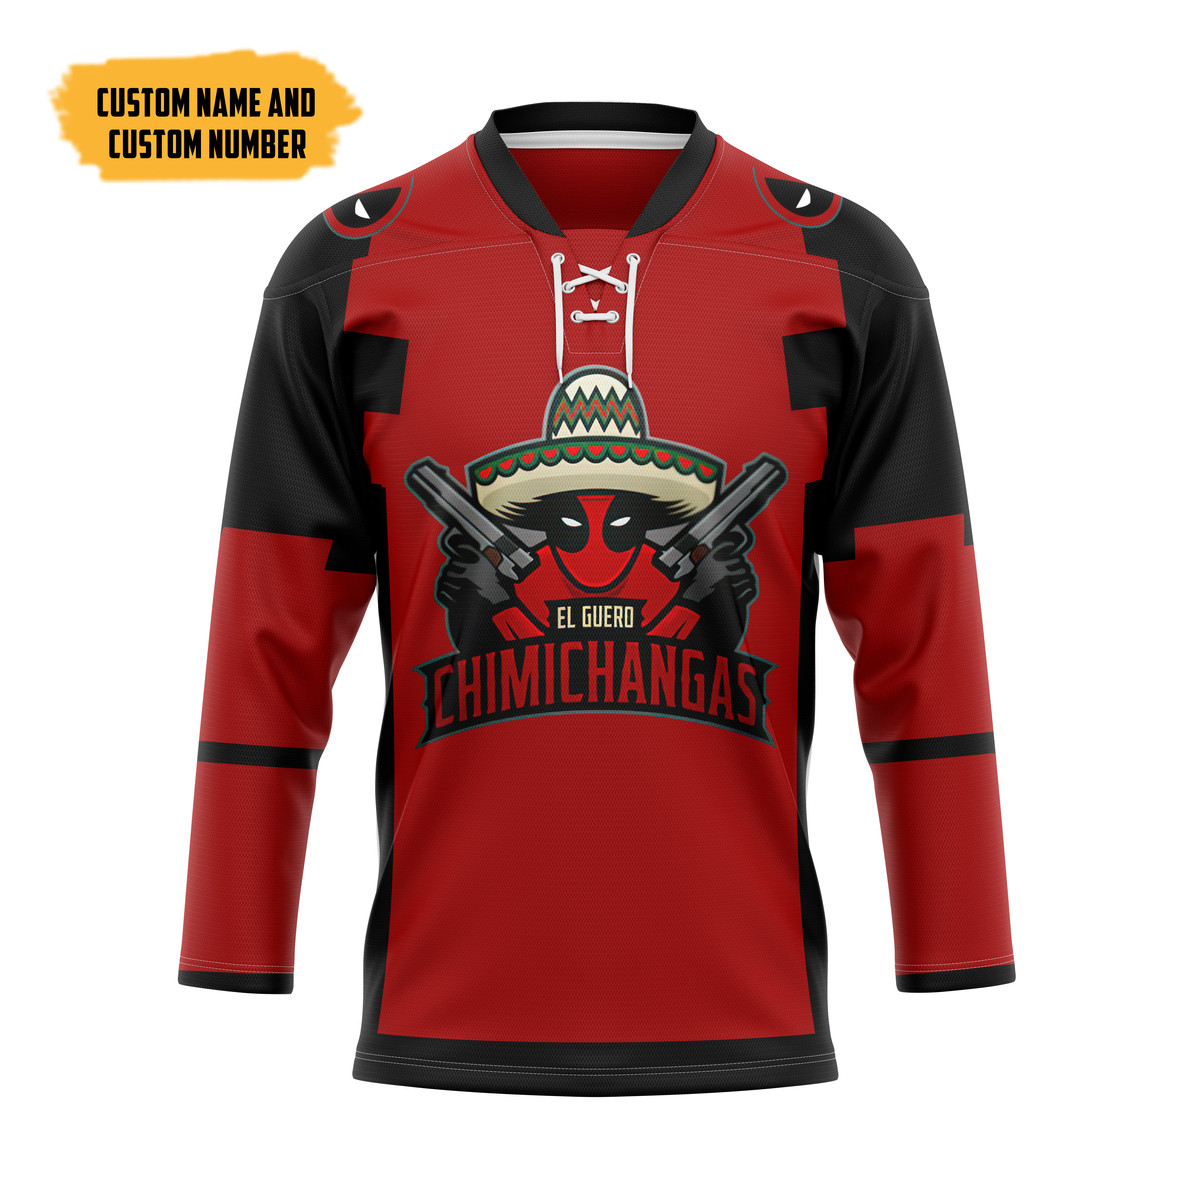 The Best Hockey Jersey Shirt 105